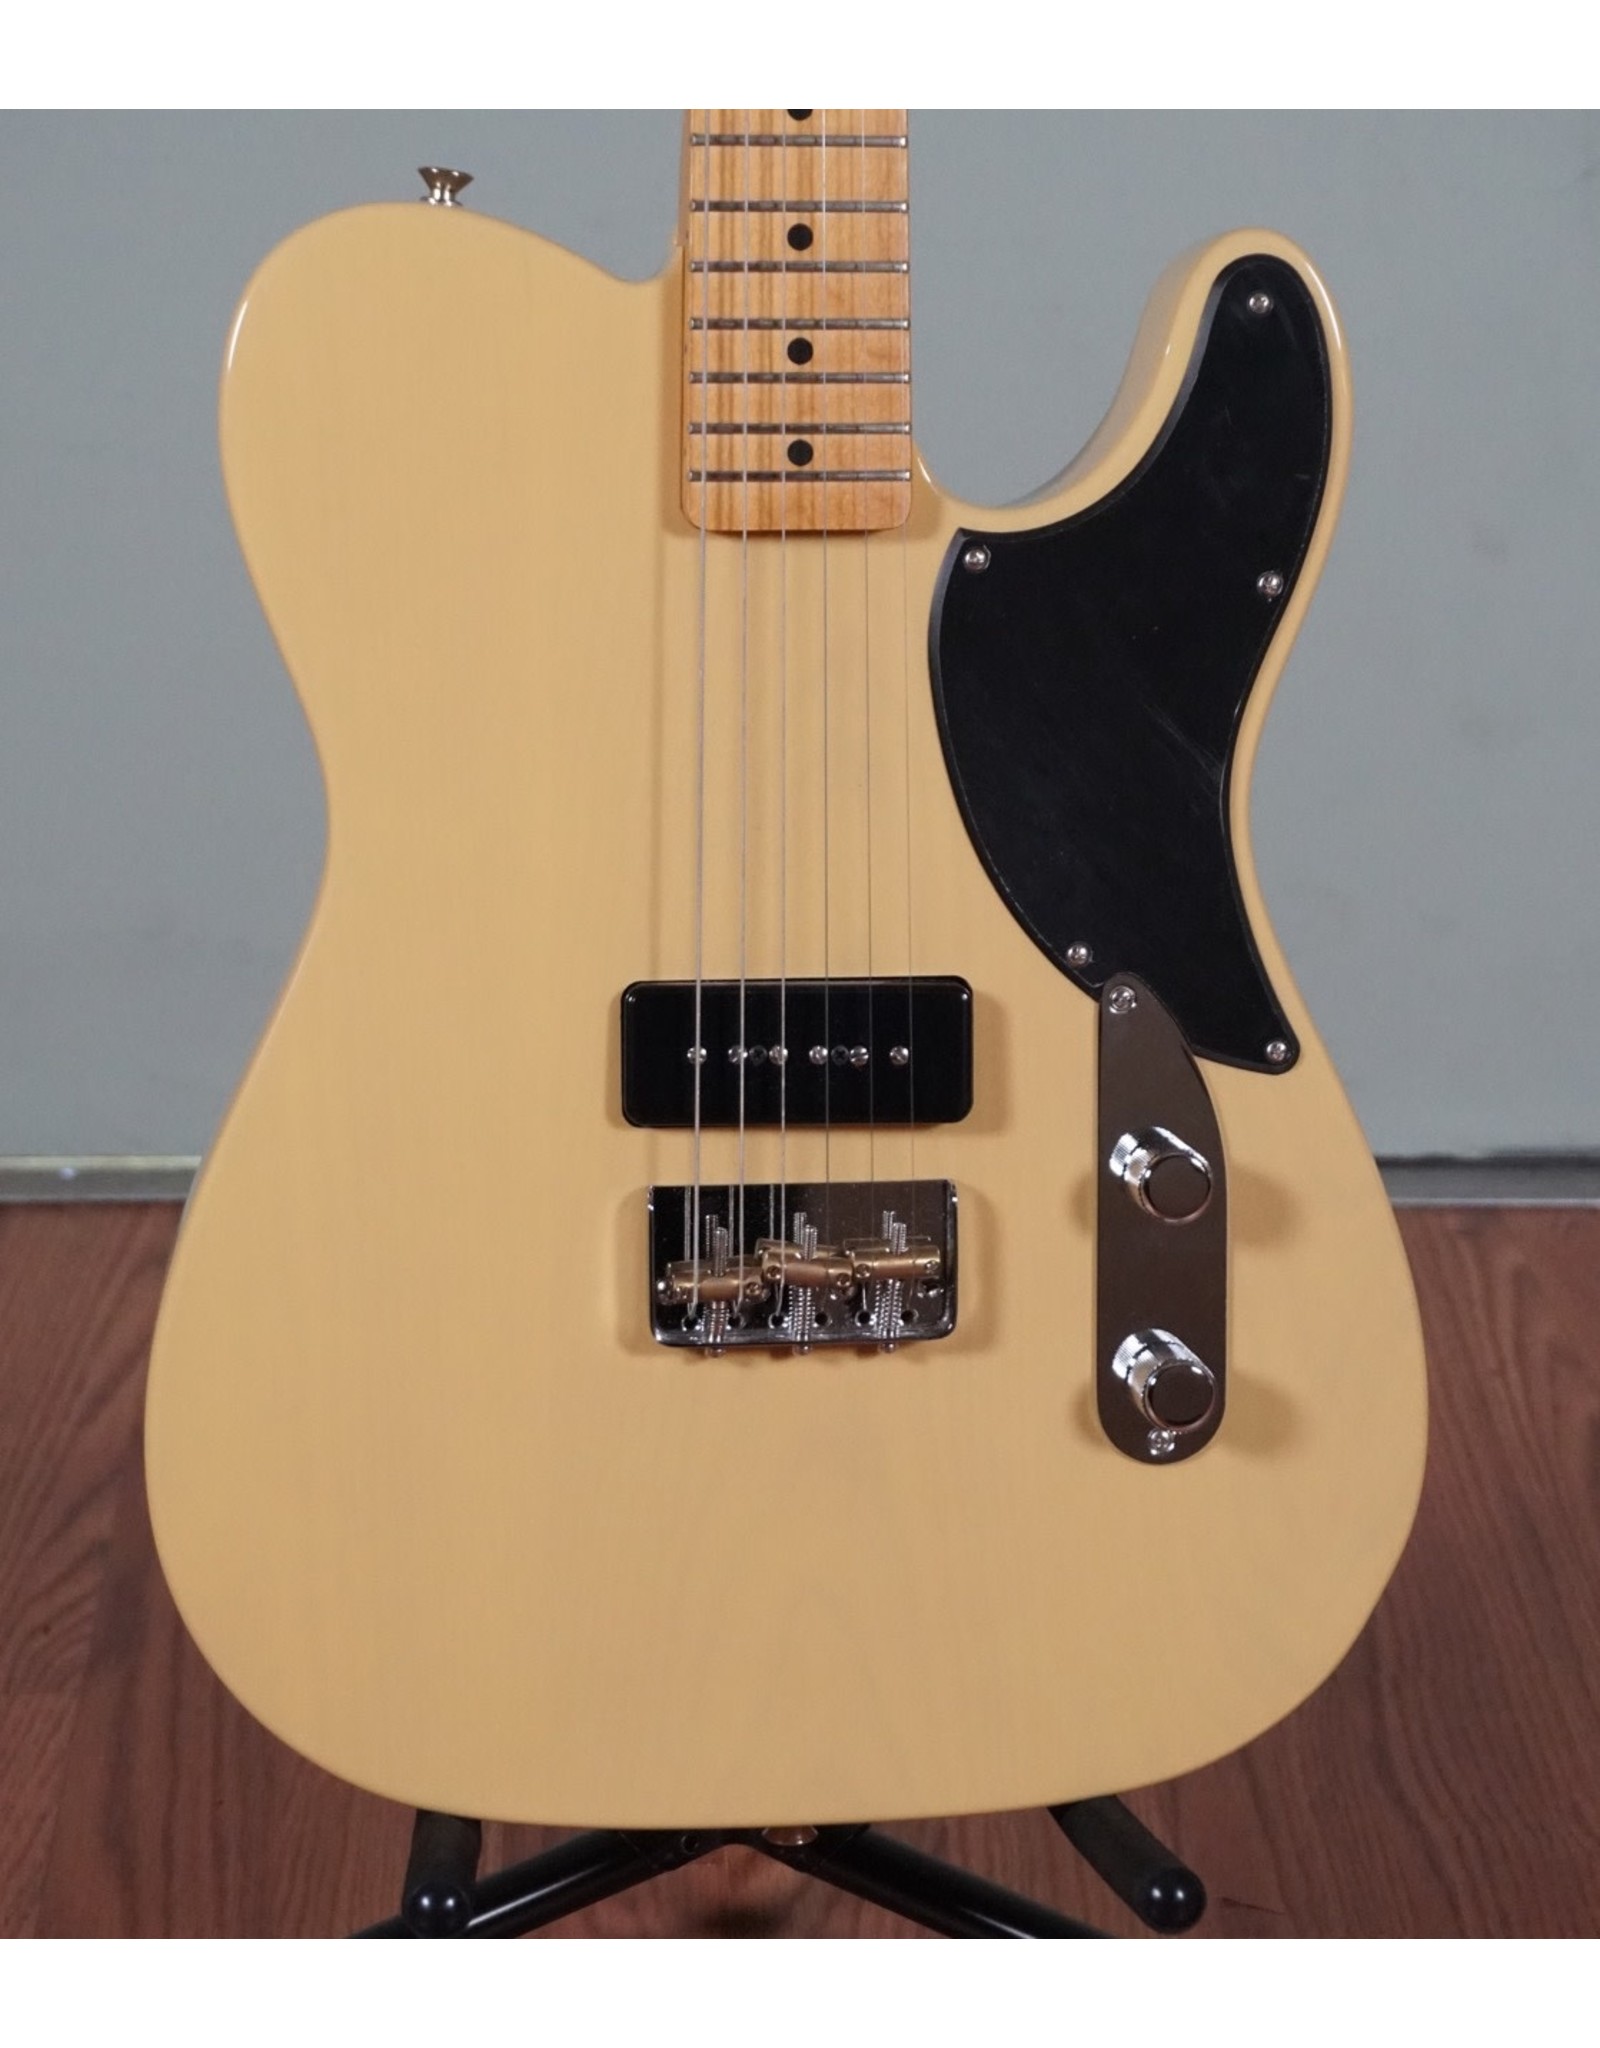 Fender Fender Noventa Telecaster,  Vintage Blonde, w/deluxe gig bag